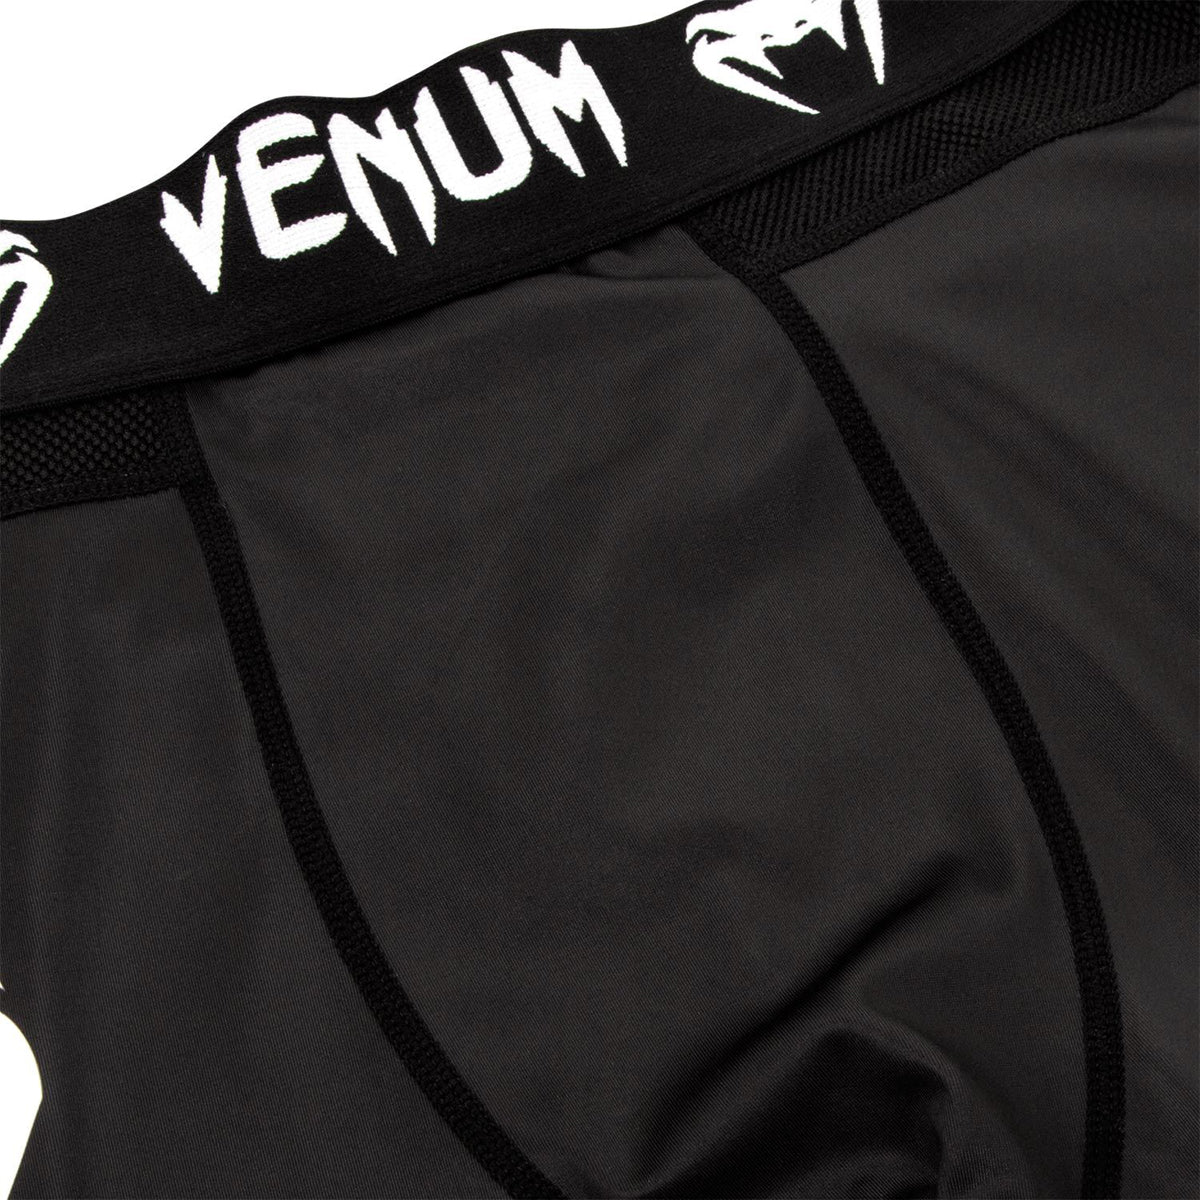 Venum Logos MMA Compression Spats - Black/White Venum